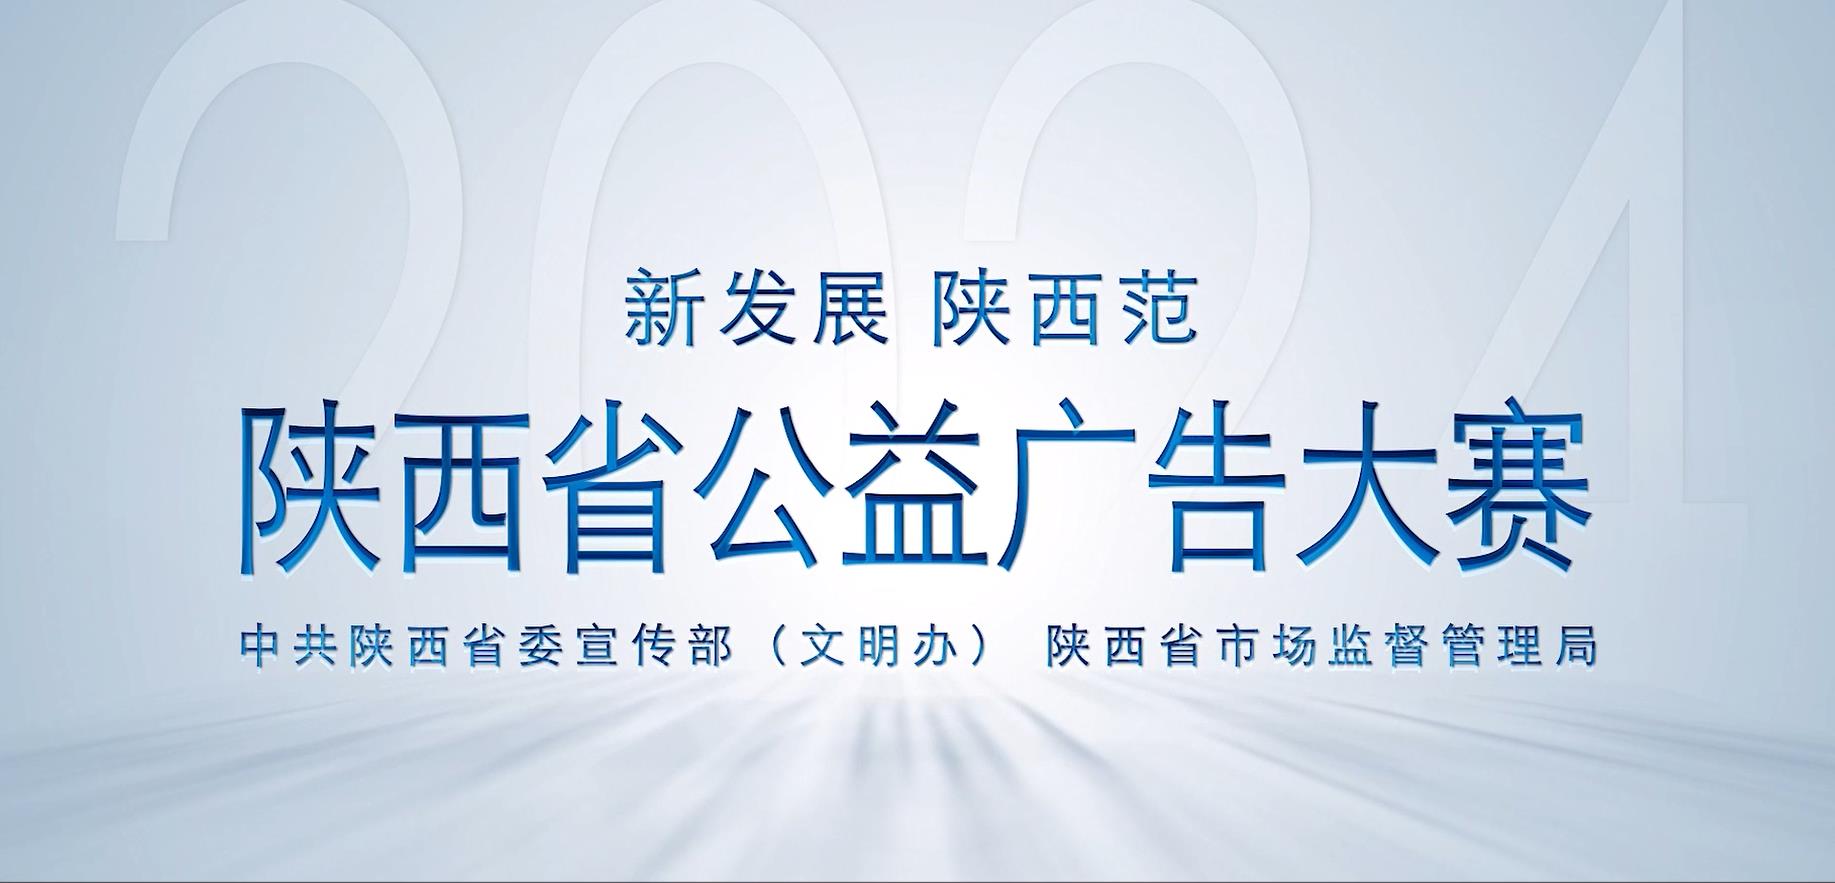 【视频】“新发展 陕西范”公益广告创意设计大赛即日启动